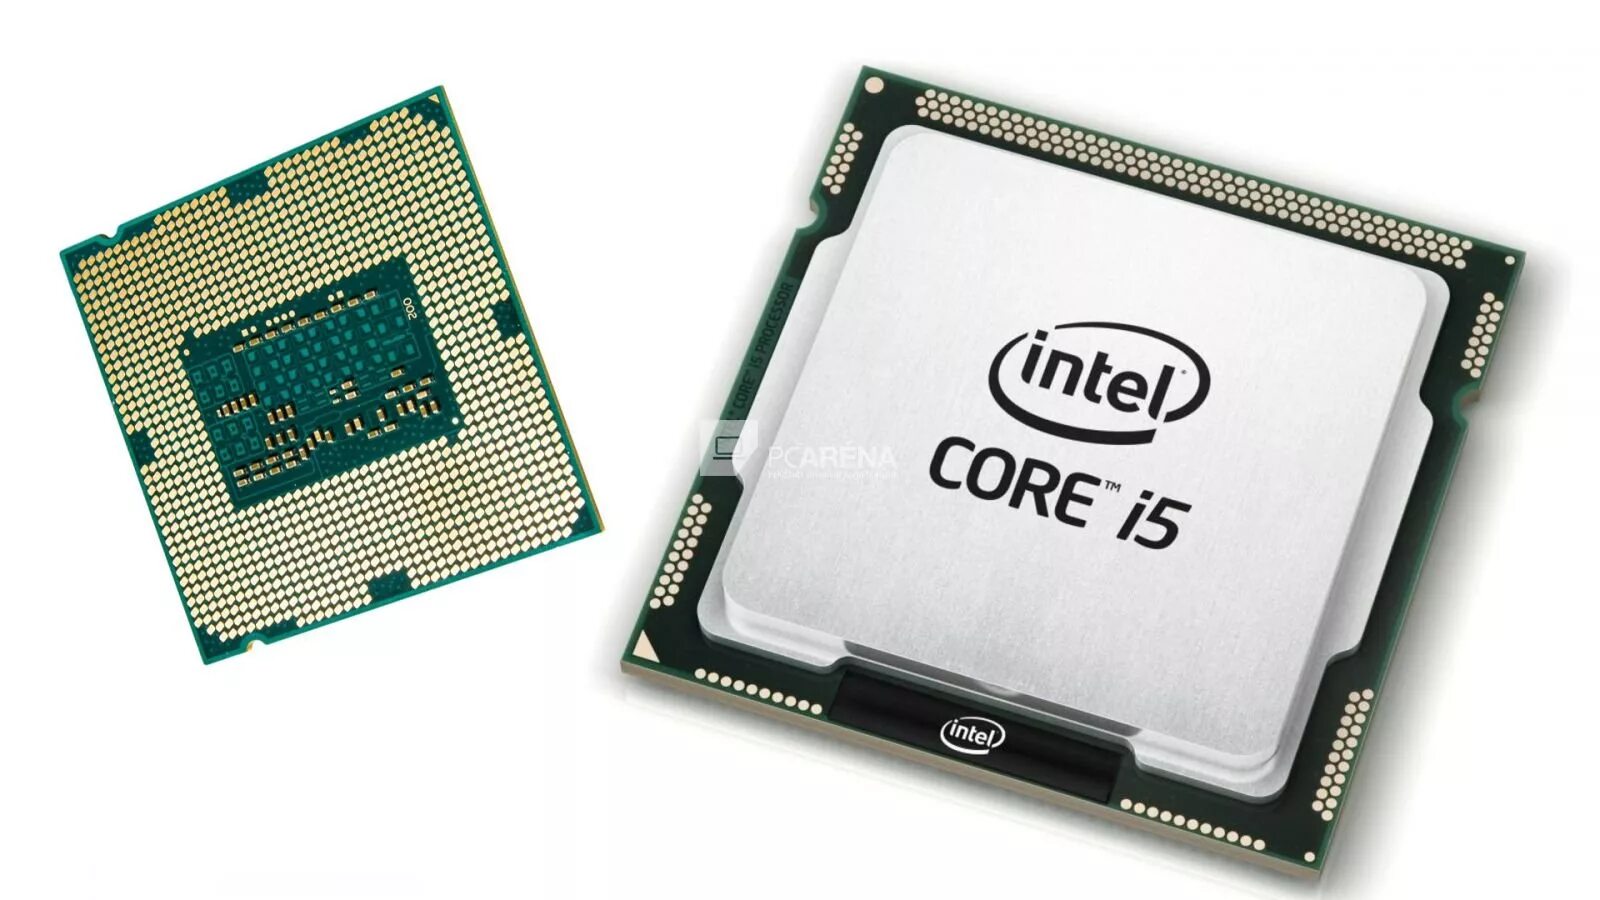 Процессор Intel Core i5 2400. Процессор Intel Core i5 inside. Intel Core i5 2400 сокет. Процессор Intel Core i5 5500. 6 ghz оперативная память